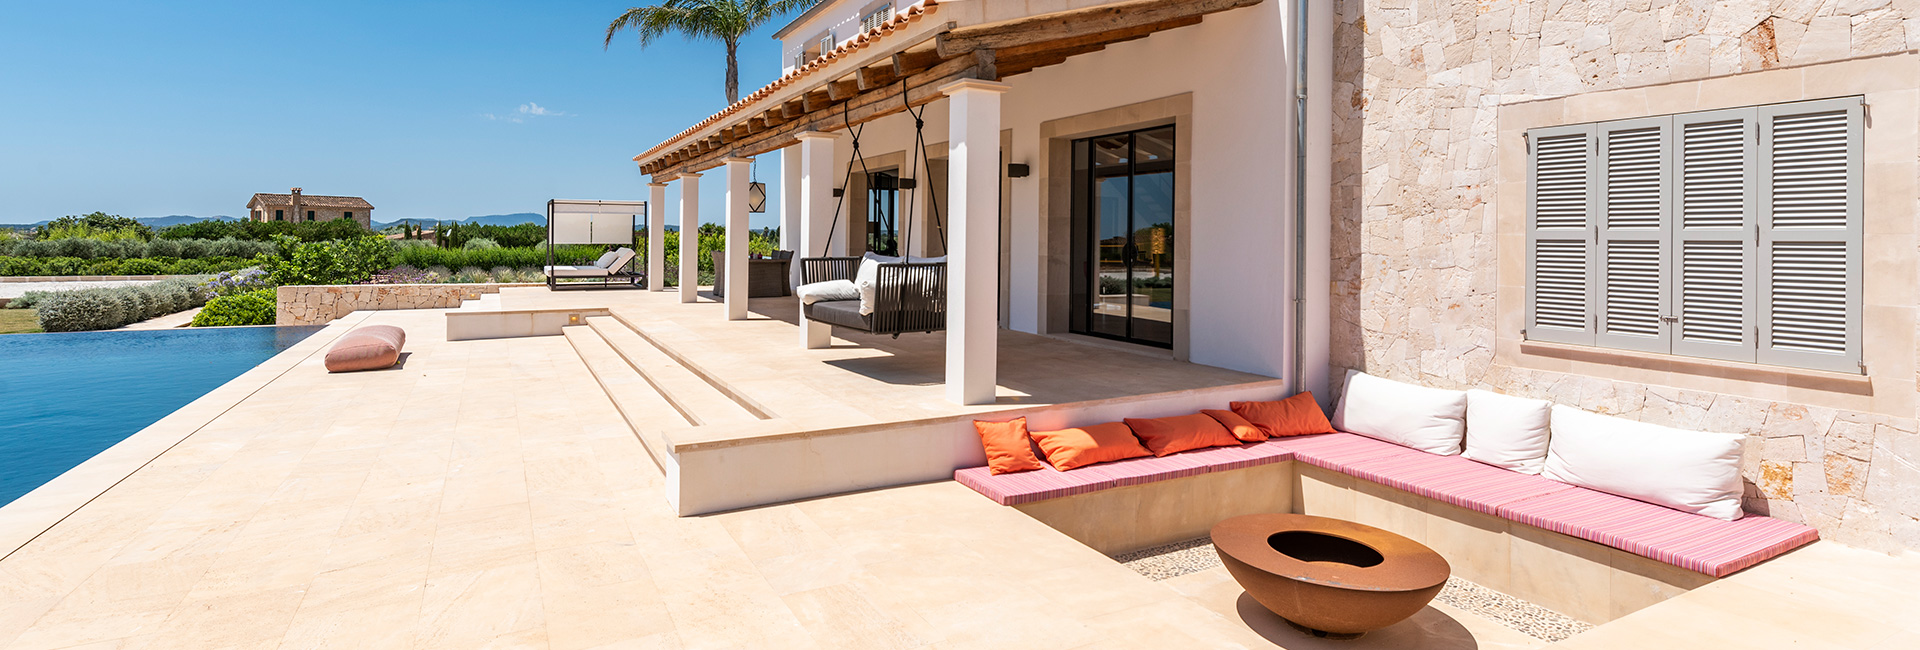 Luxus Immobilien auf Mallorca kaufen mit Pool und Finca